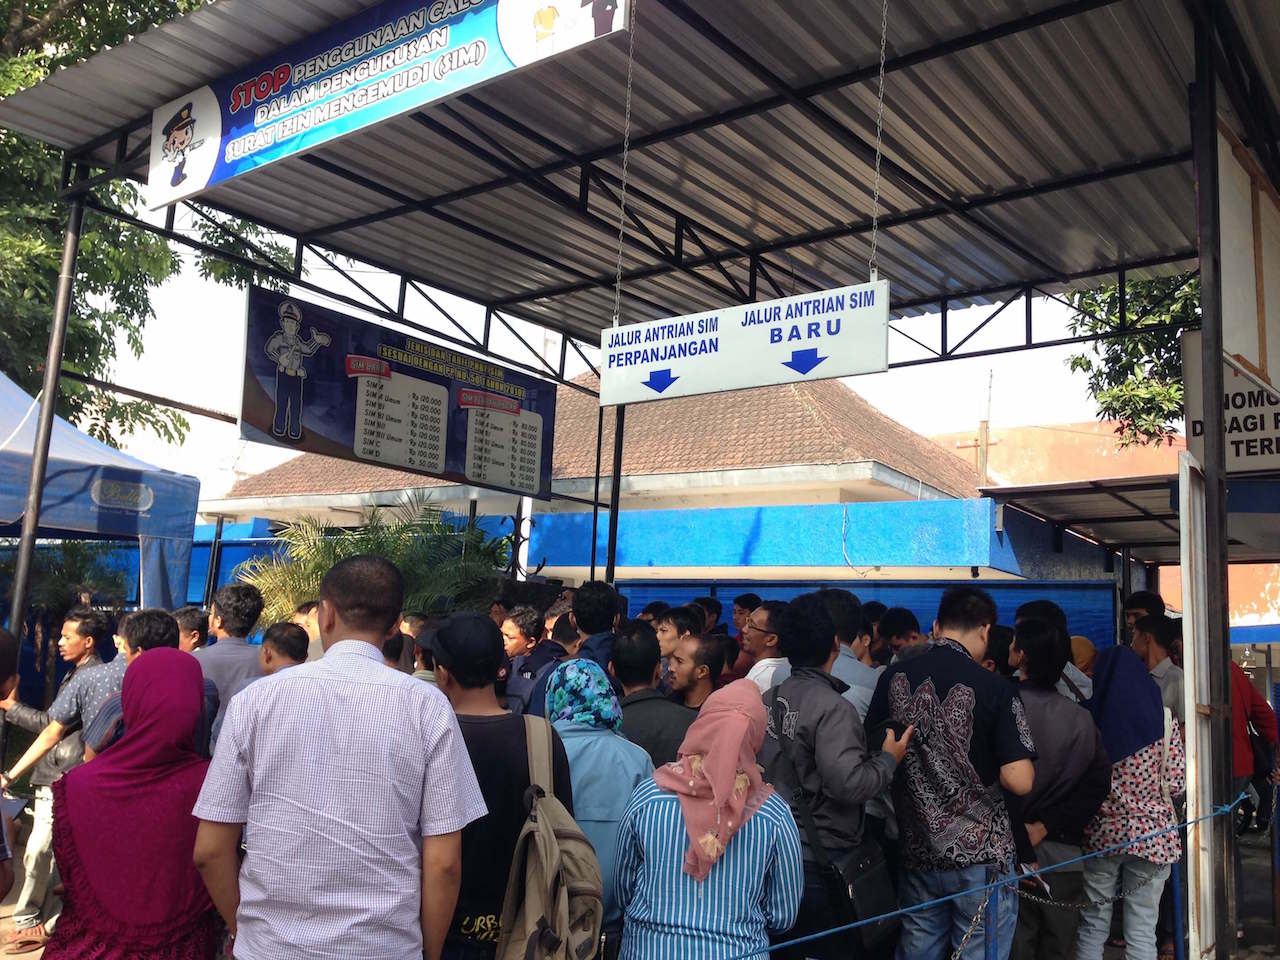 インドネシアの運転免許試験場 番号札を求めて整列するインドネシア人